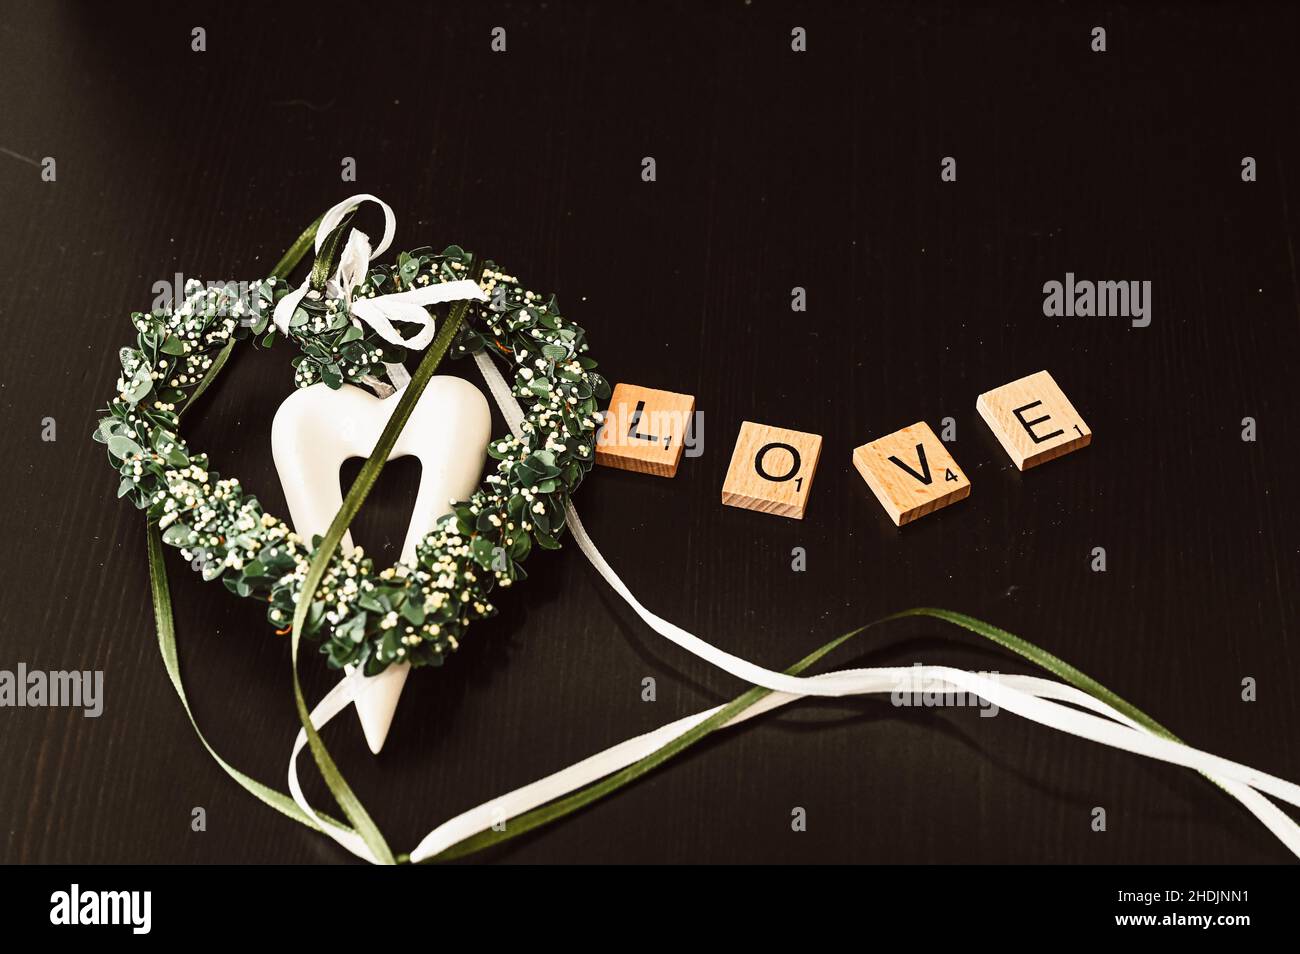 Le mot Love est posé à partir de lettres en bois, à côté d'un coeur blanc sur fond noir Banque D'Images